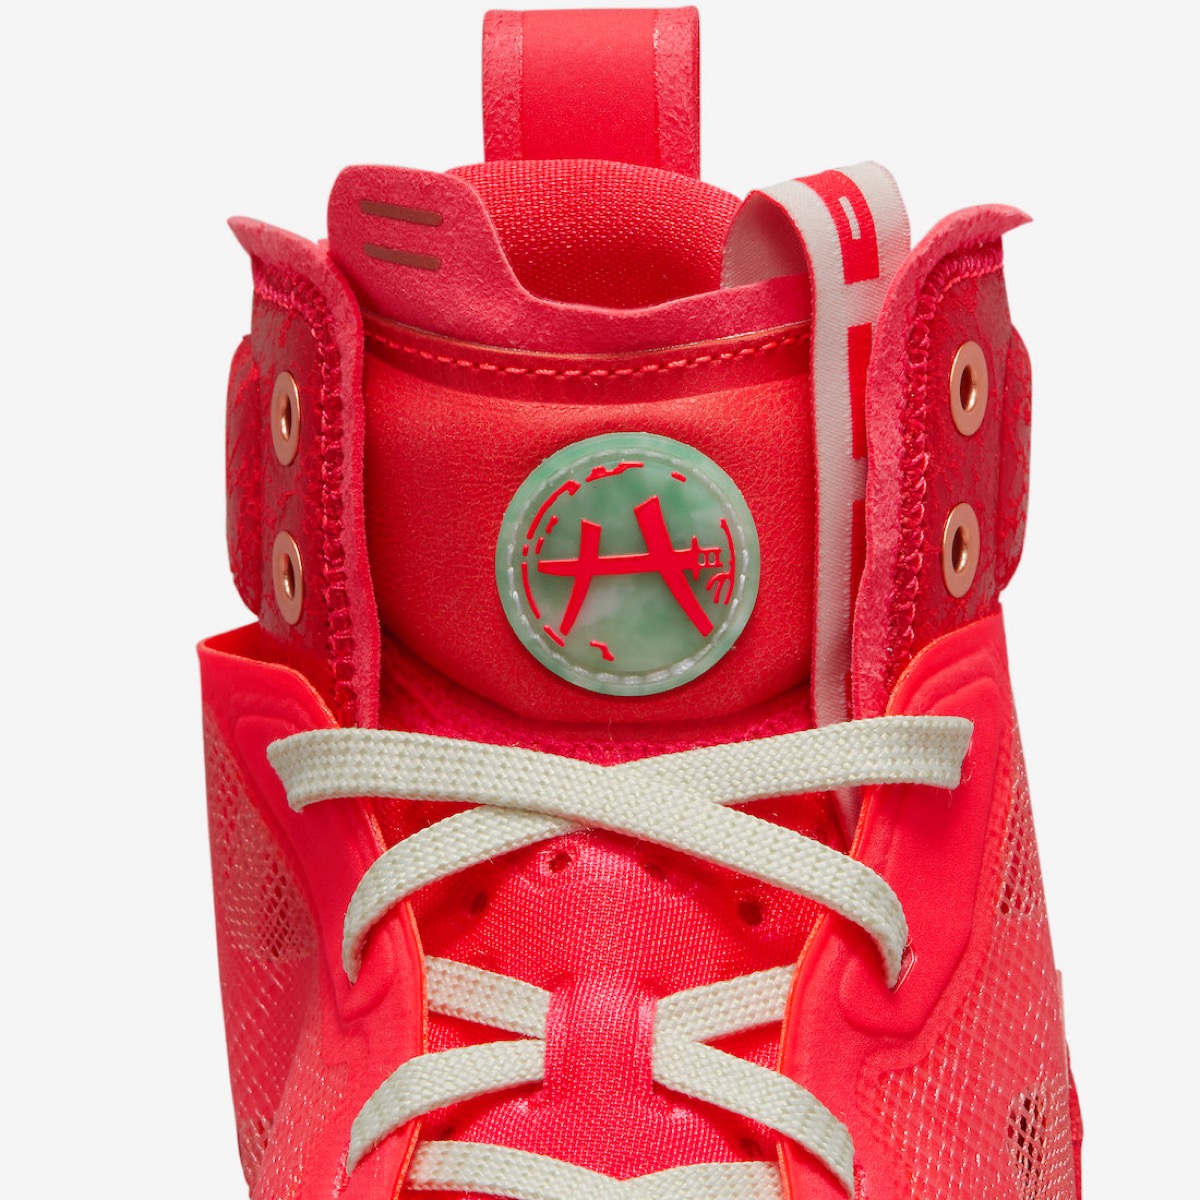 Rui Hachimura × Nike Air Jordan  “Siren Red”が国内月に発売